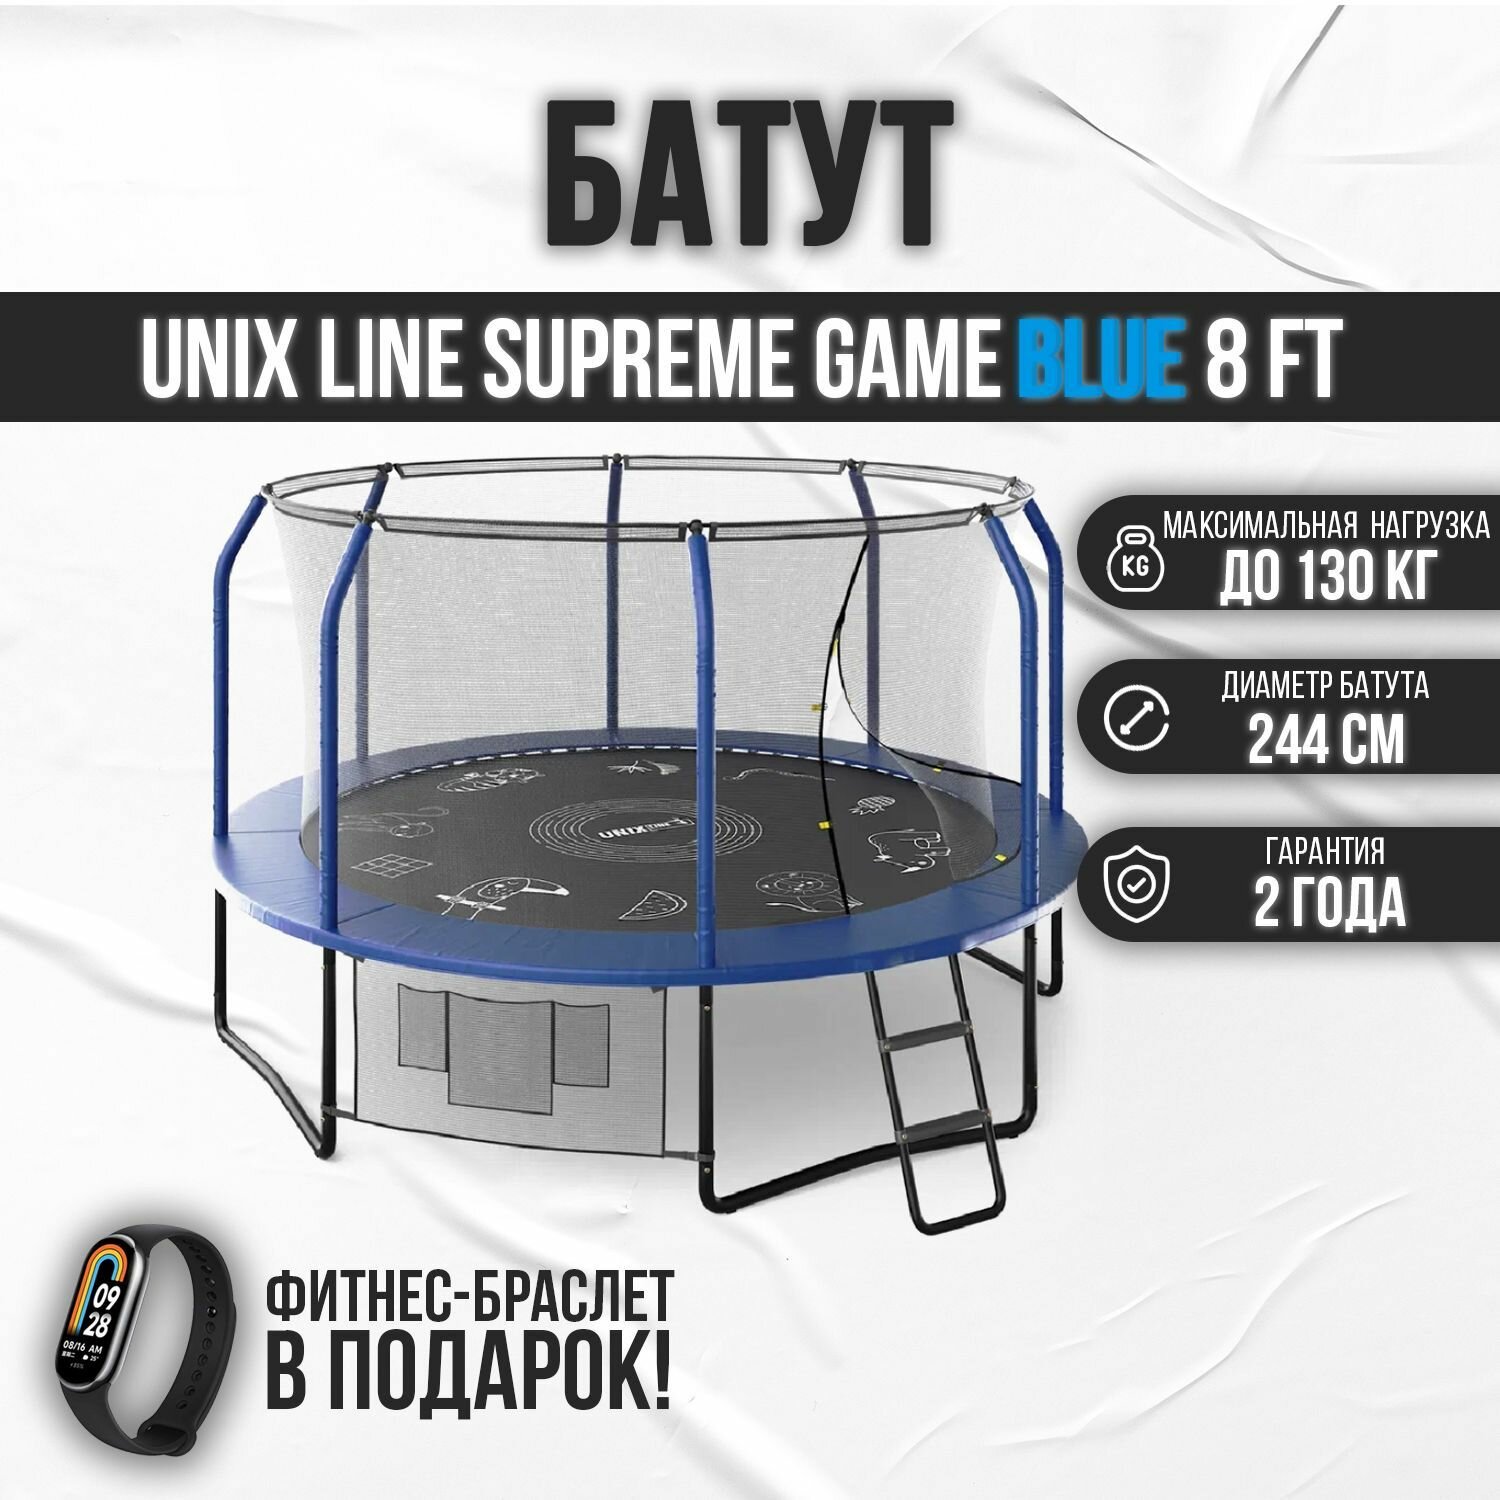 Батут каркасный UNIX line SUPREME GAME 8 ft blue / с защитной сеткой / с лестницей / для детей / для дачи / для улицы / до 130 кг / диаметр 244 см